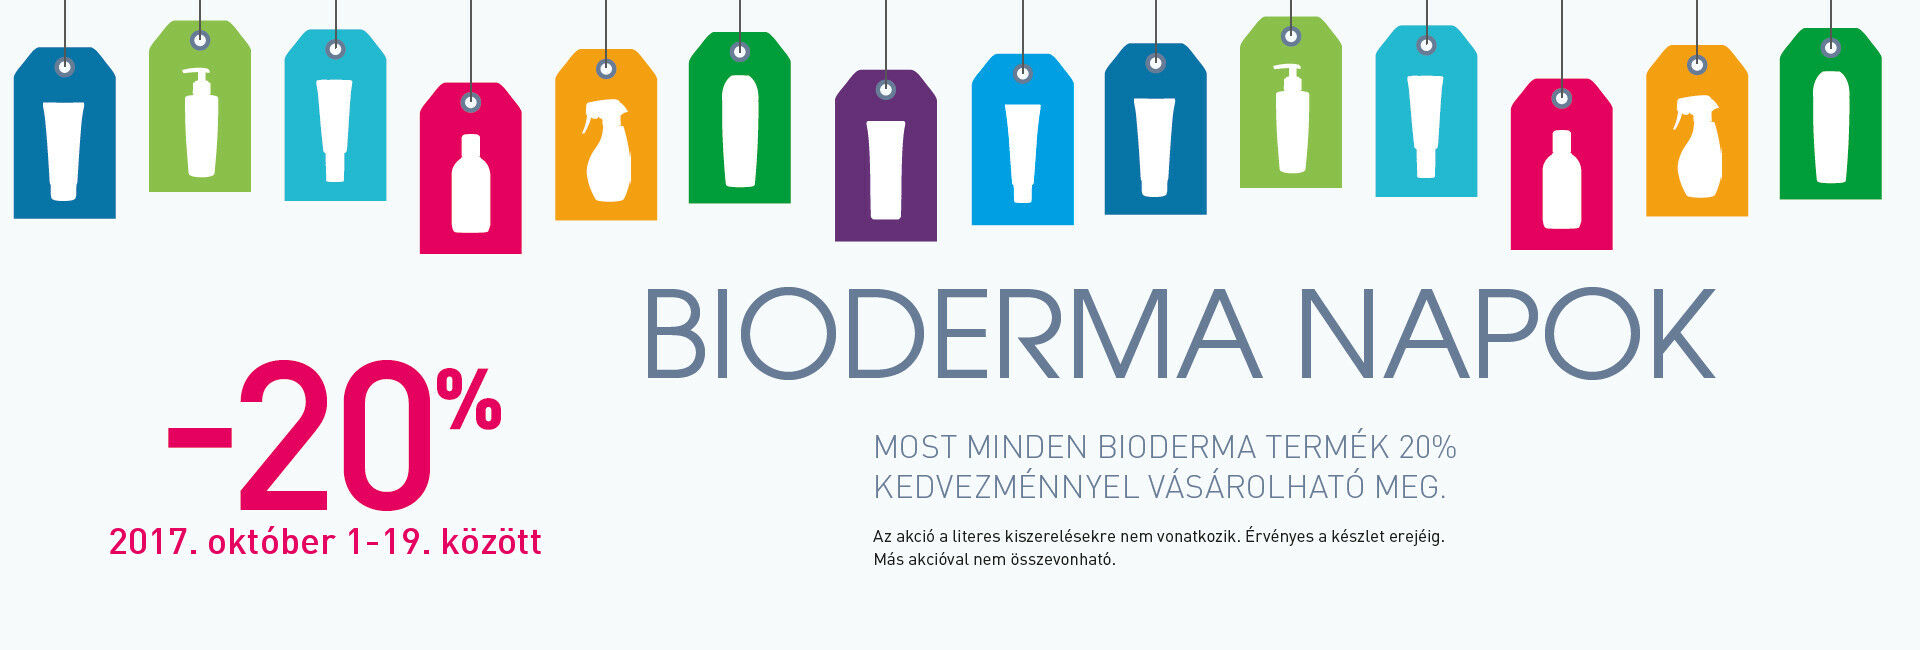 Minden Bioderma terméket 20-50% kedvezménnyel kínálunk!